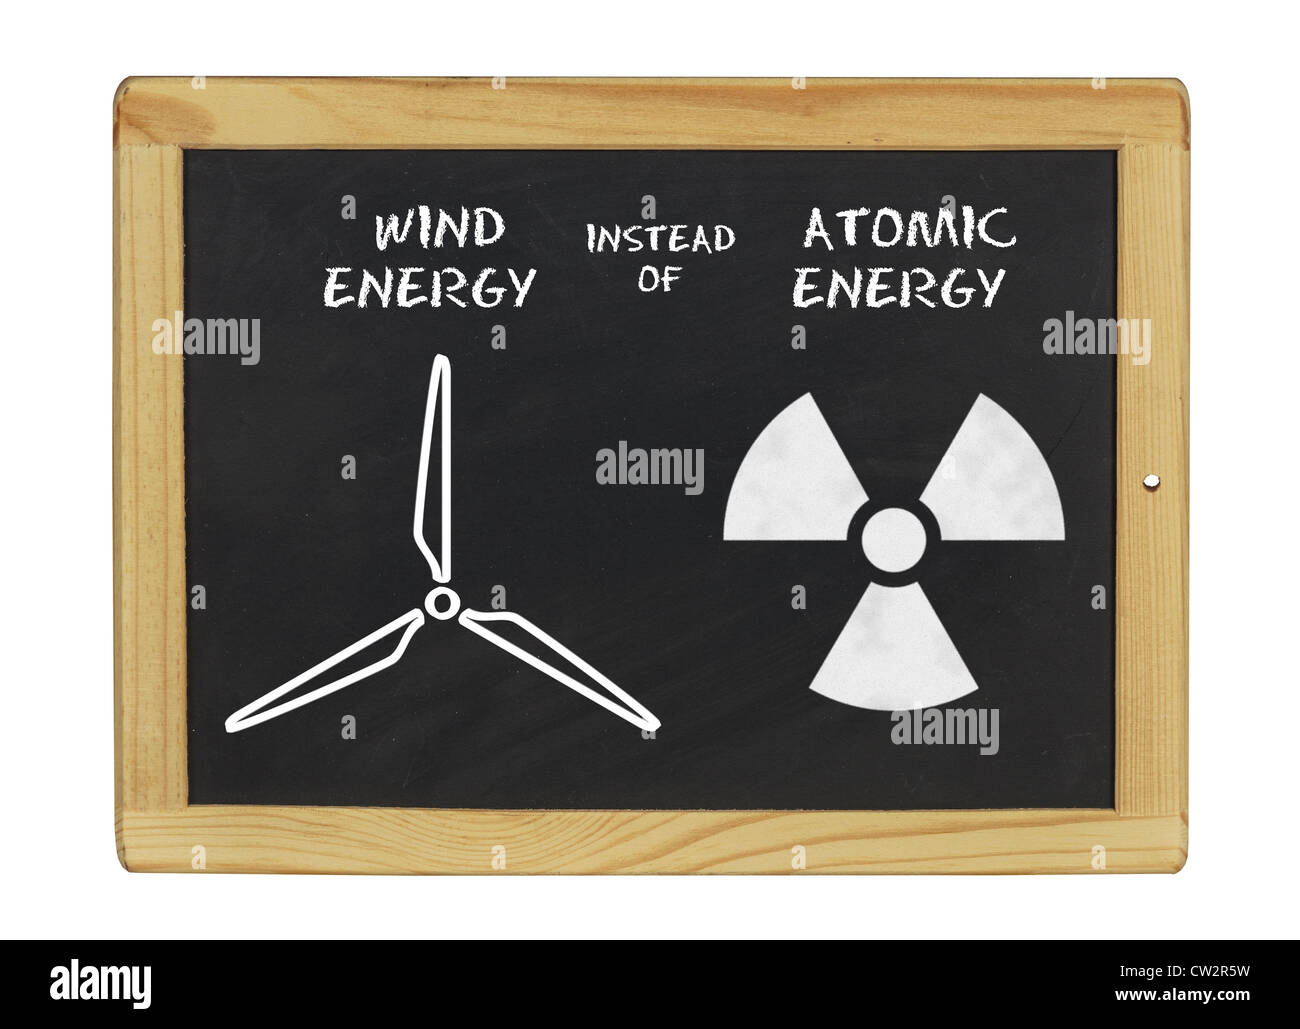 Tableau de l'énergie éolienne au lieu de l'énergie atomique Banque D'Images